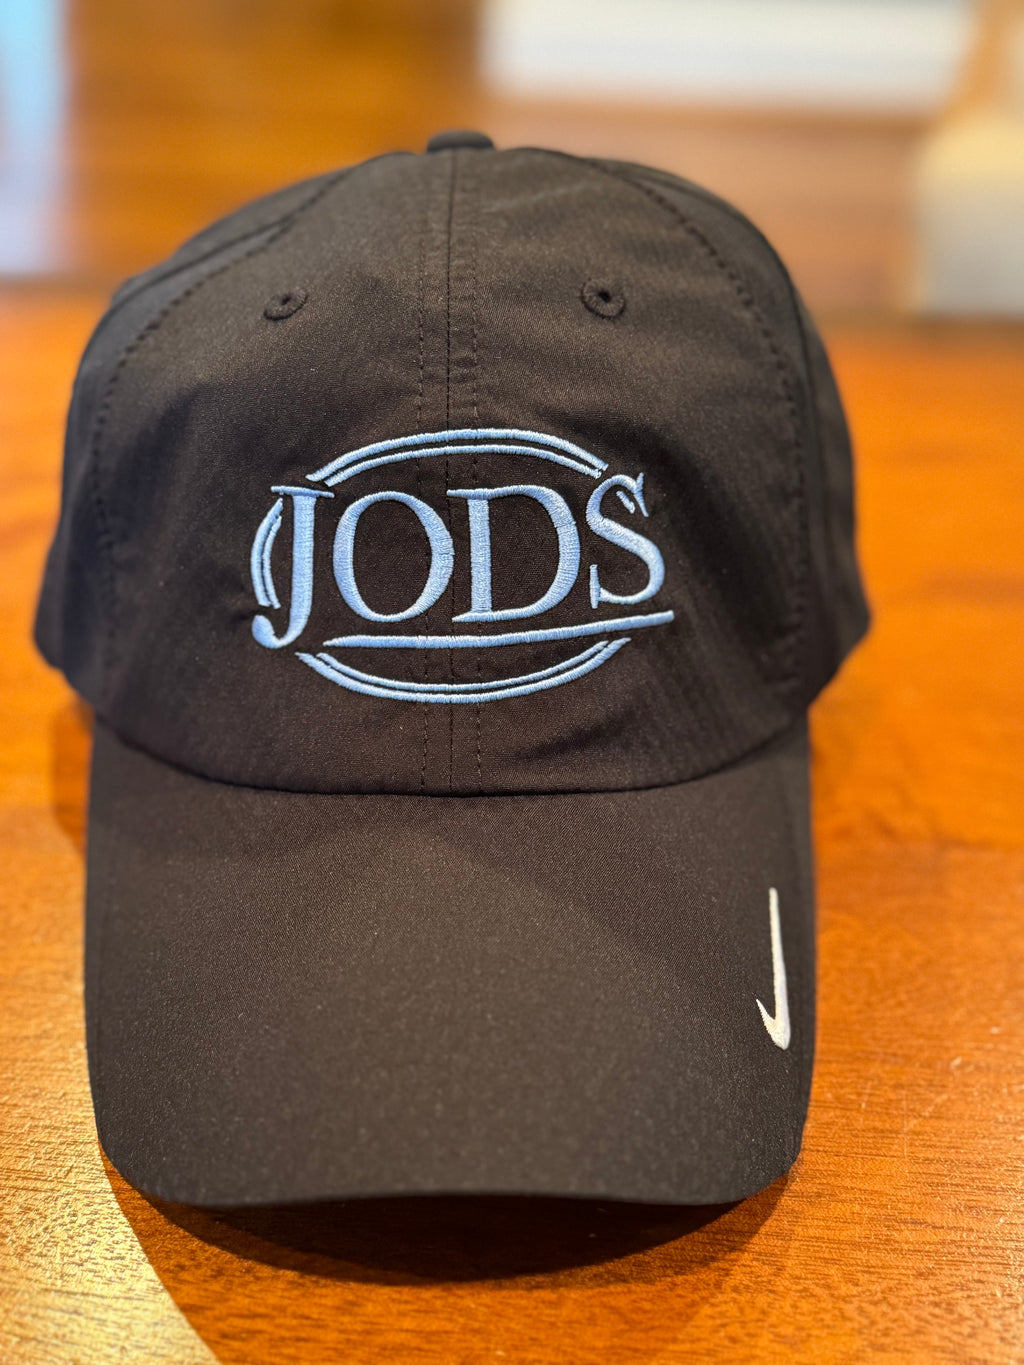 JODS lightweight baseball cap